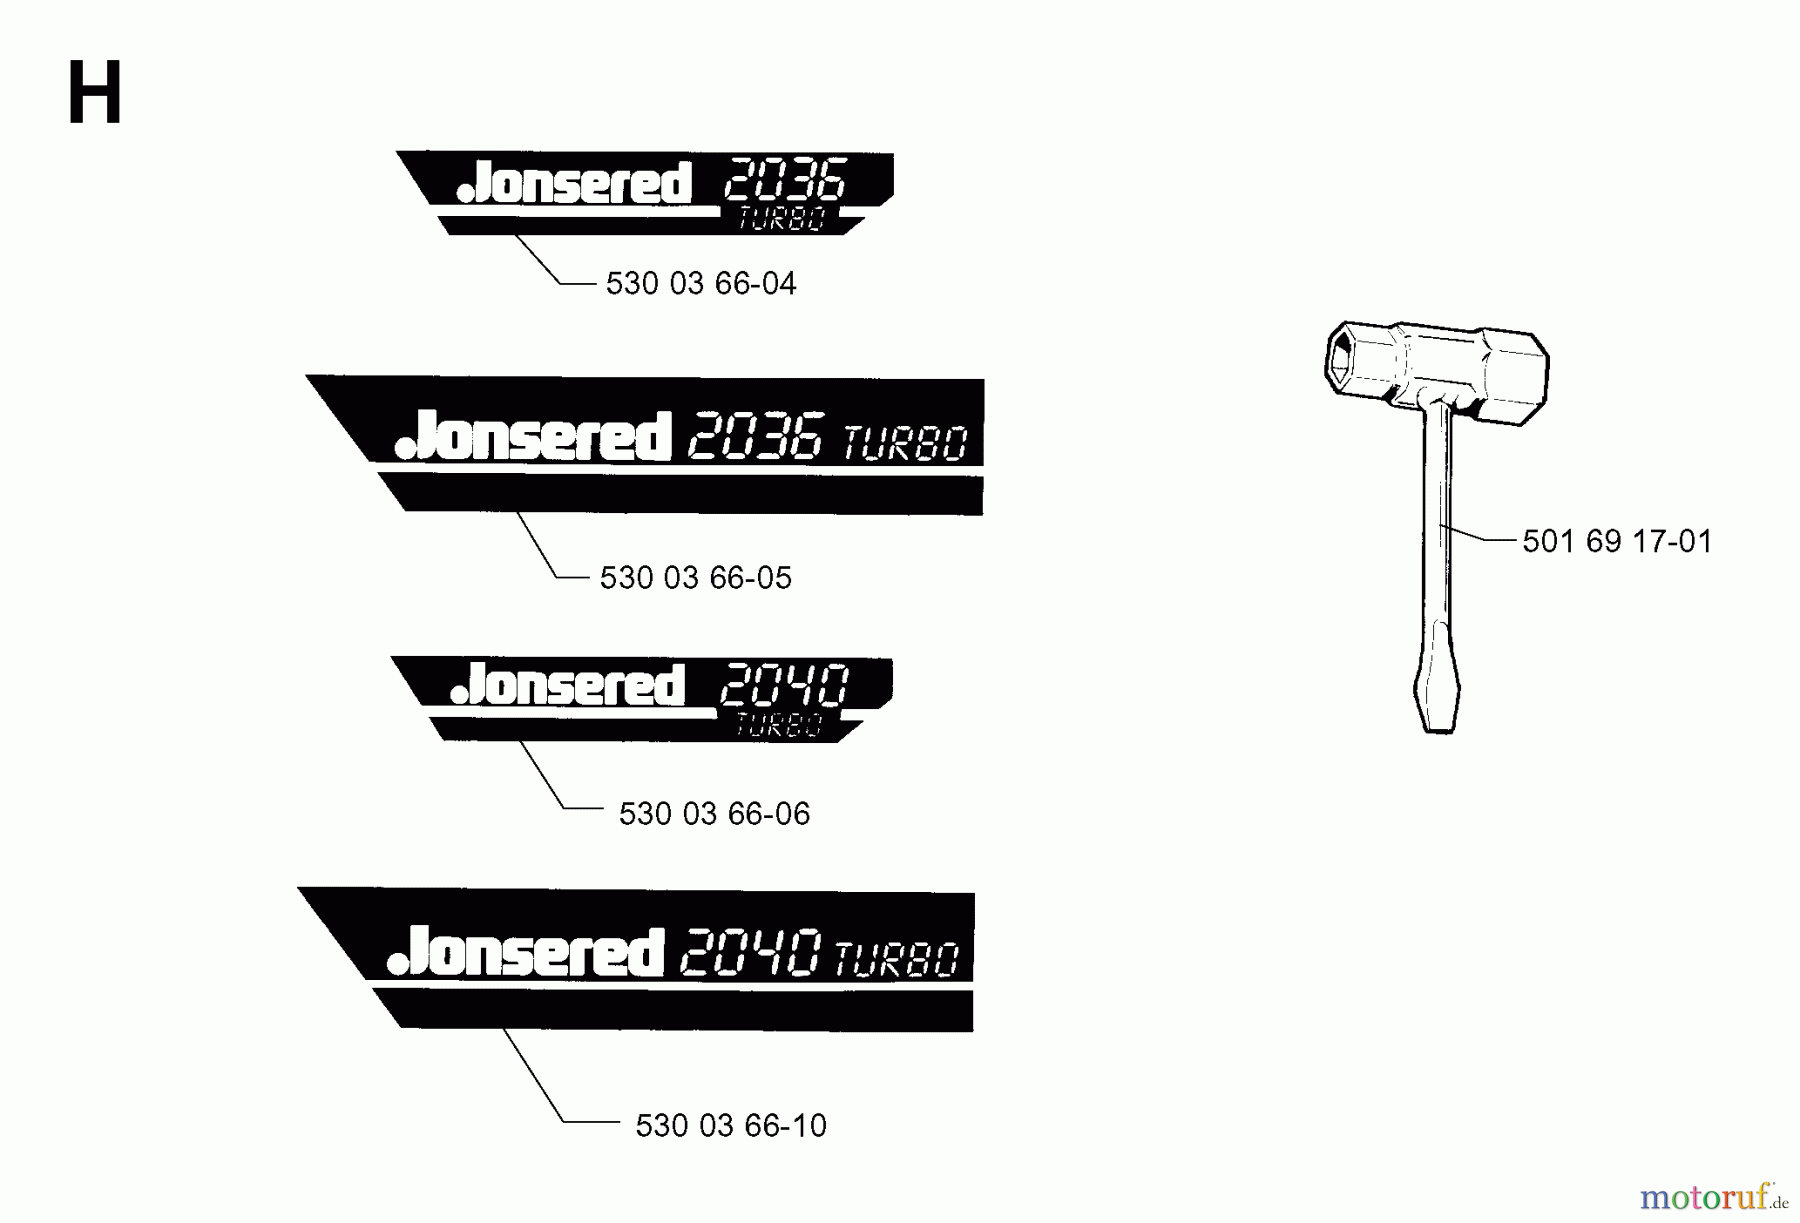  Jonsered Motorsägen 2040 - Jonsered Chainsaw (2002-01) DECALS